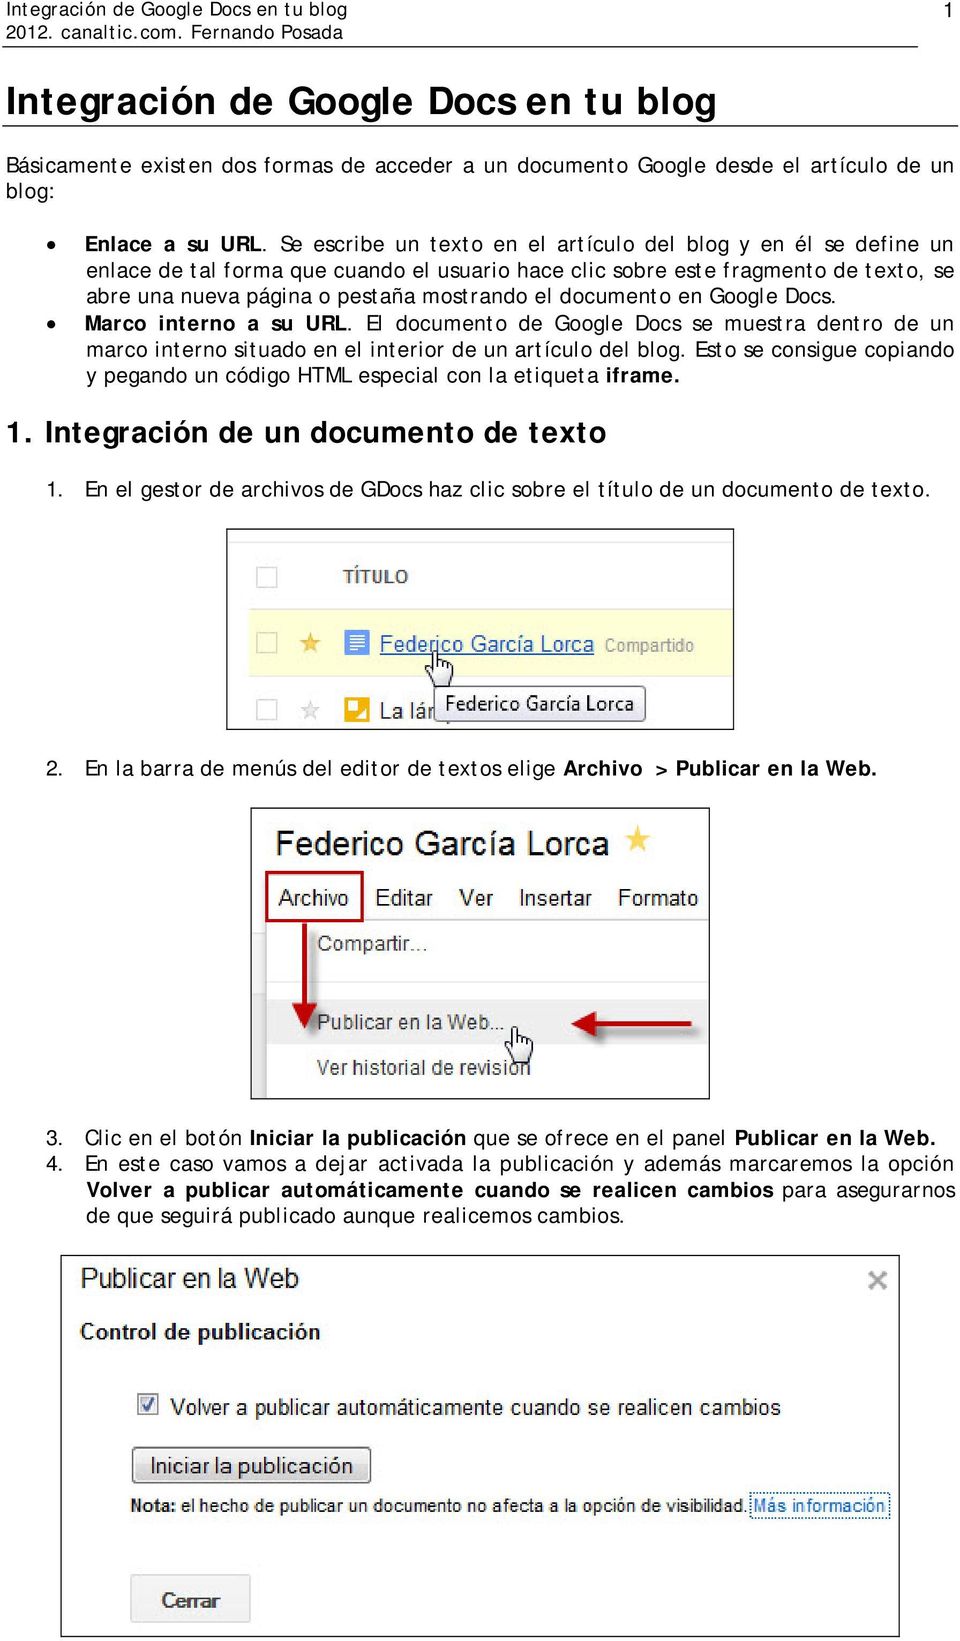 documento en Google Docs. Marco interno a su URL. El documento de Google Docs se muestra dentro de un marco interno situado en el interior de un artículo del blog.